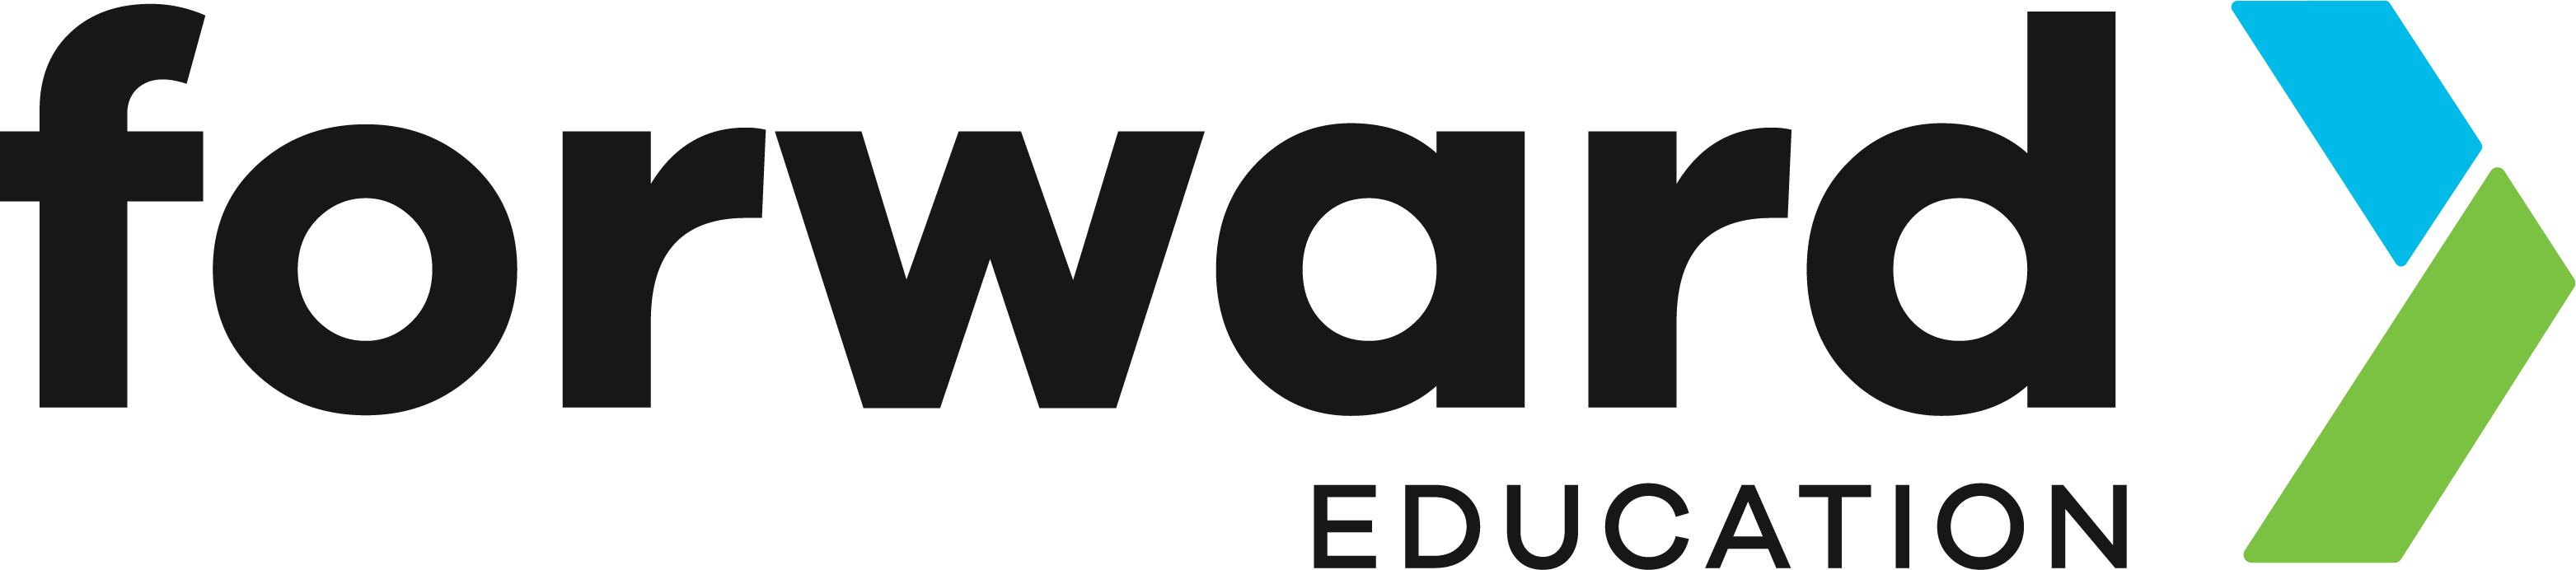 Forward Education logo